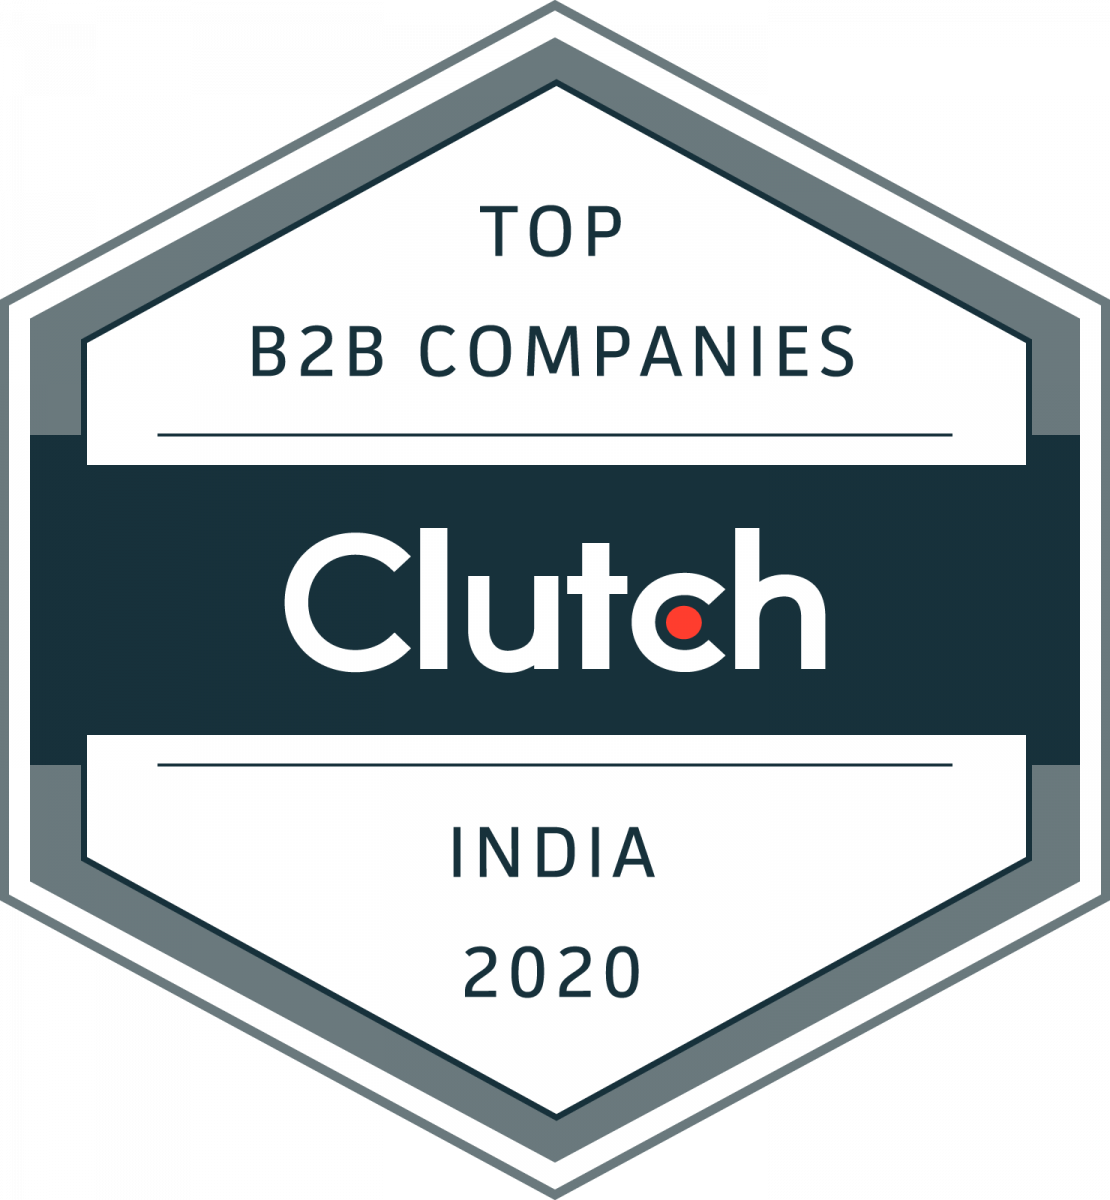 Top B2B Companies in India Clutch